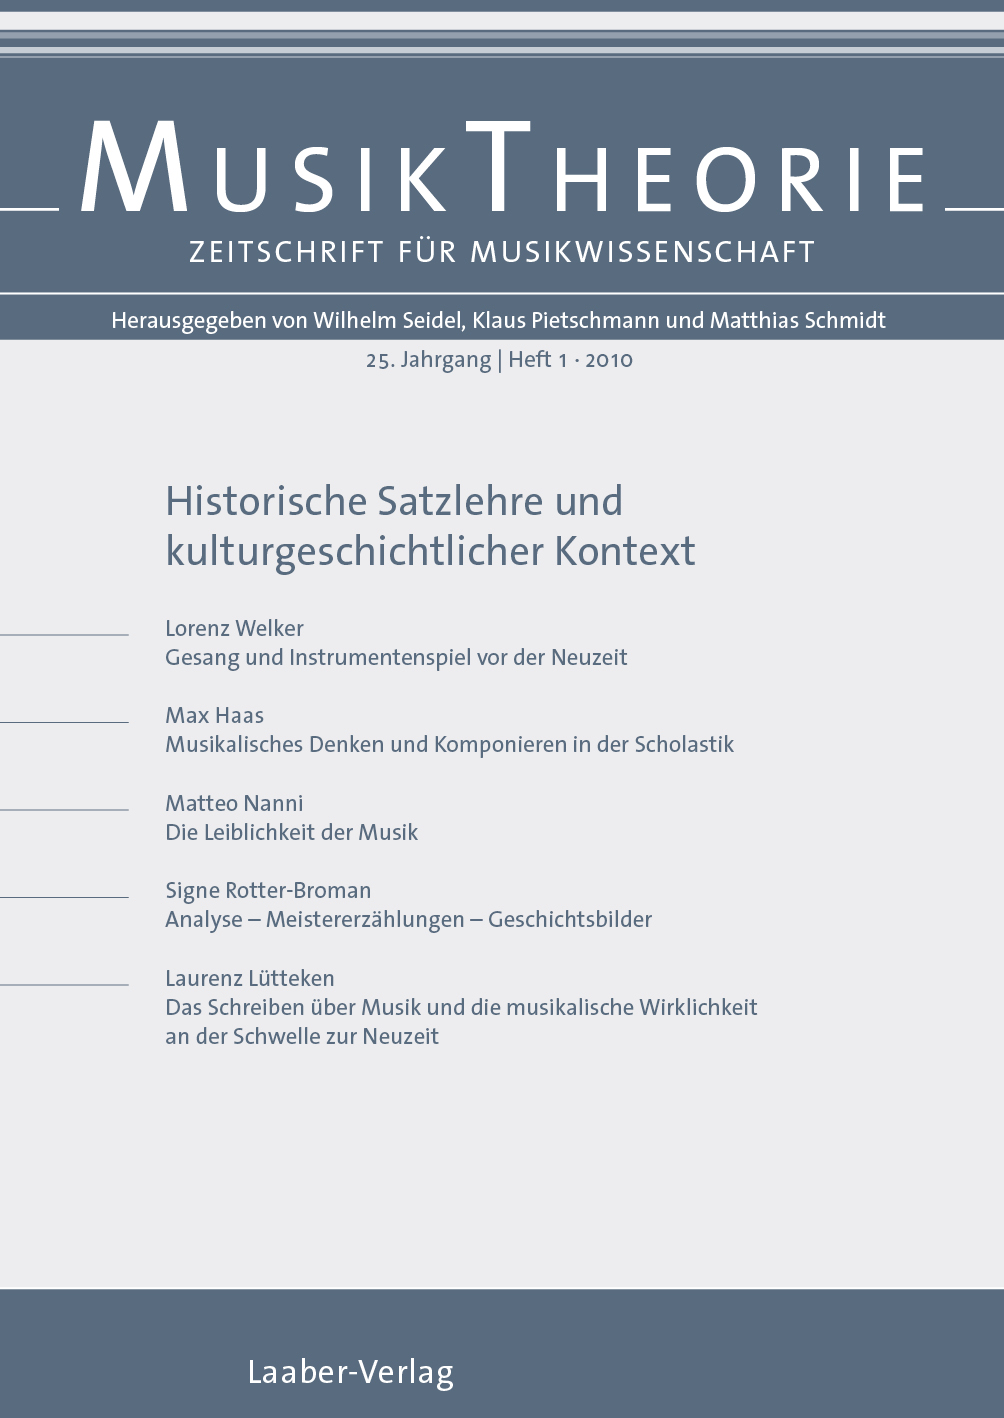 Musiktheorie Heft 1/2010